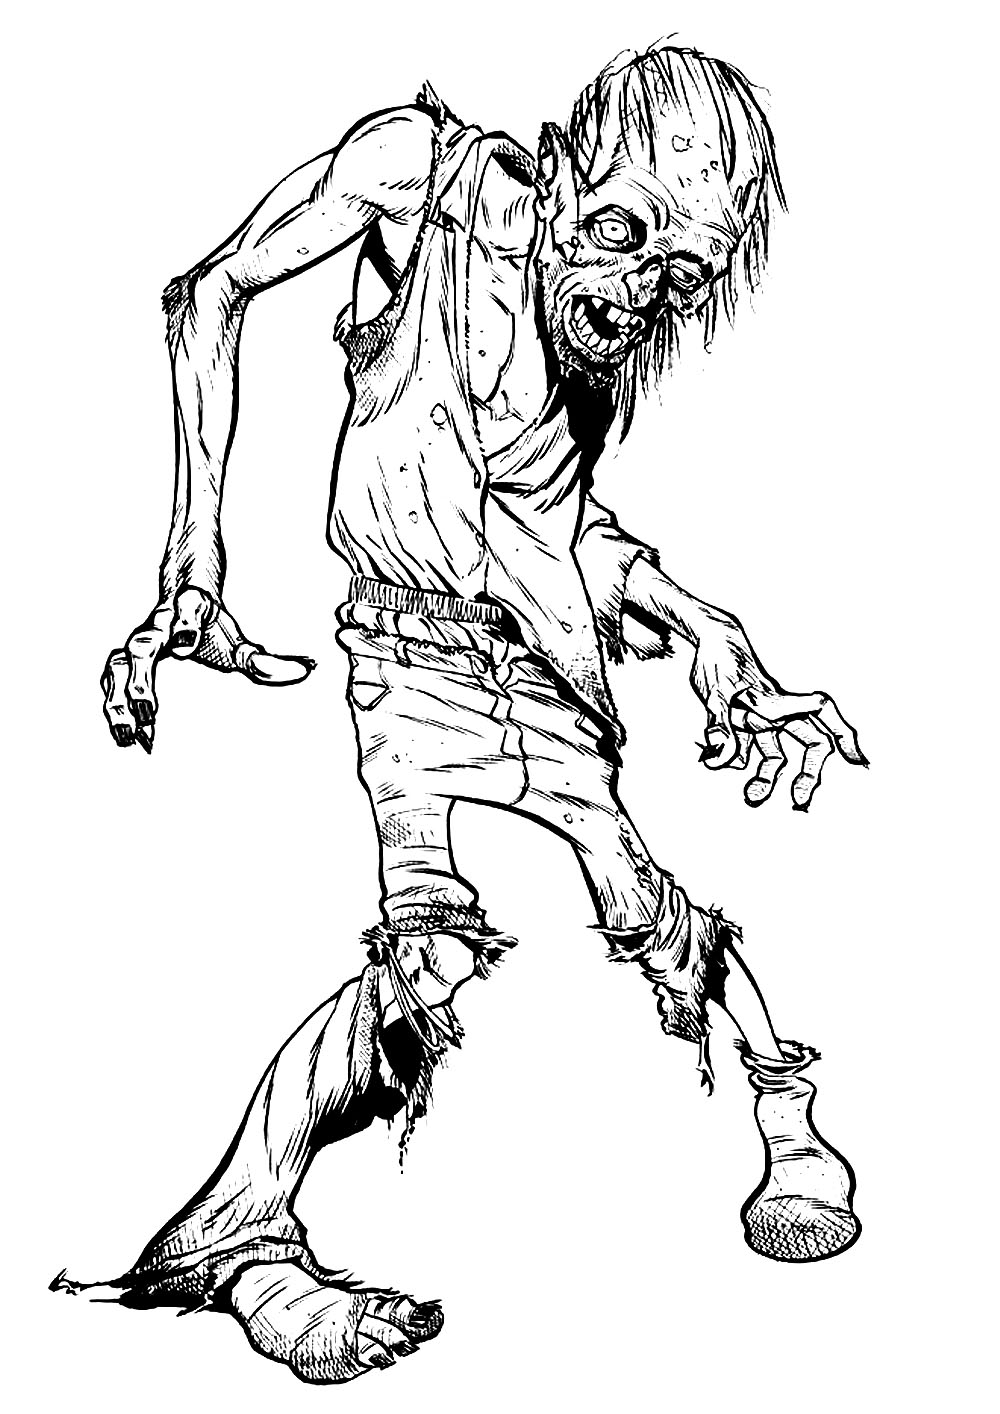 Uno spaventoso Zombie che cammina verso di te! Coloralo prima che ti trasformi in uno Zombie!